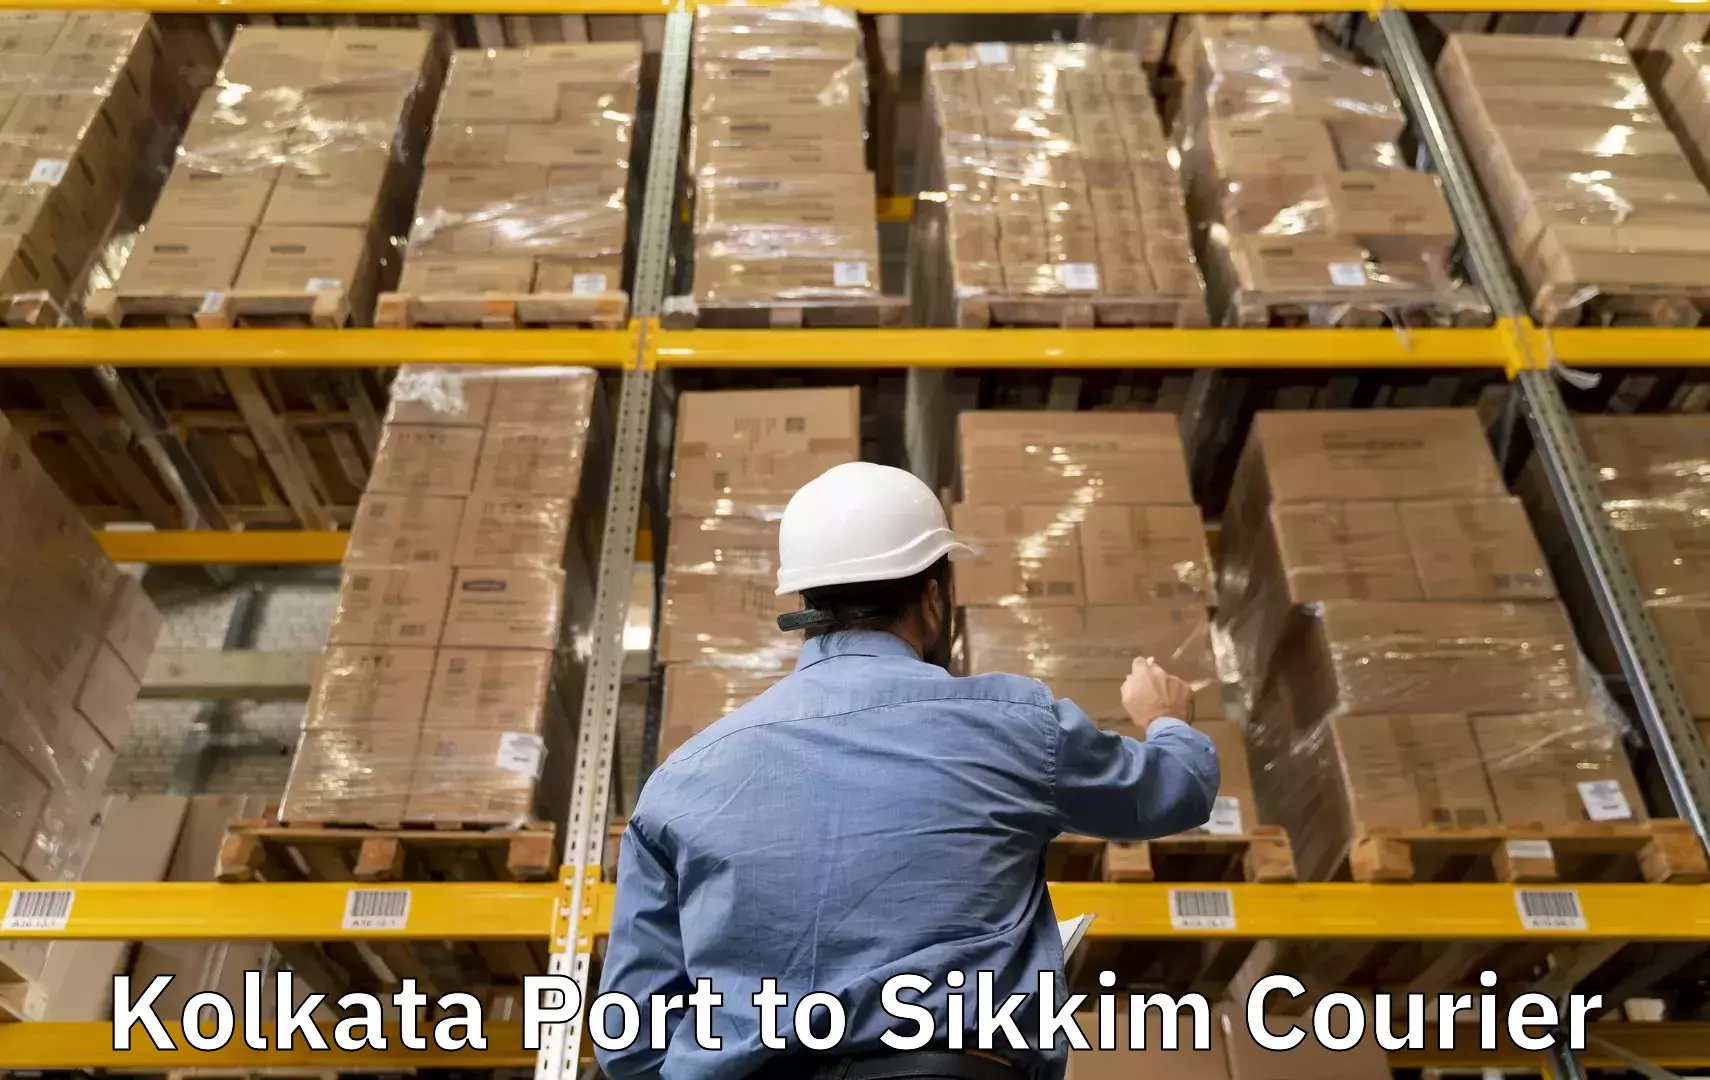 Baggage delivery estimate Kolkata Port to Gangtok